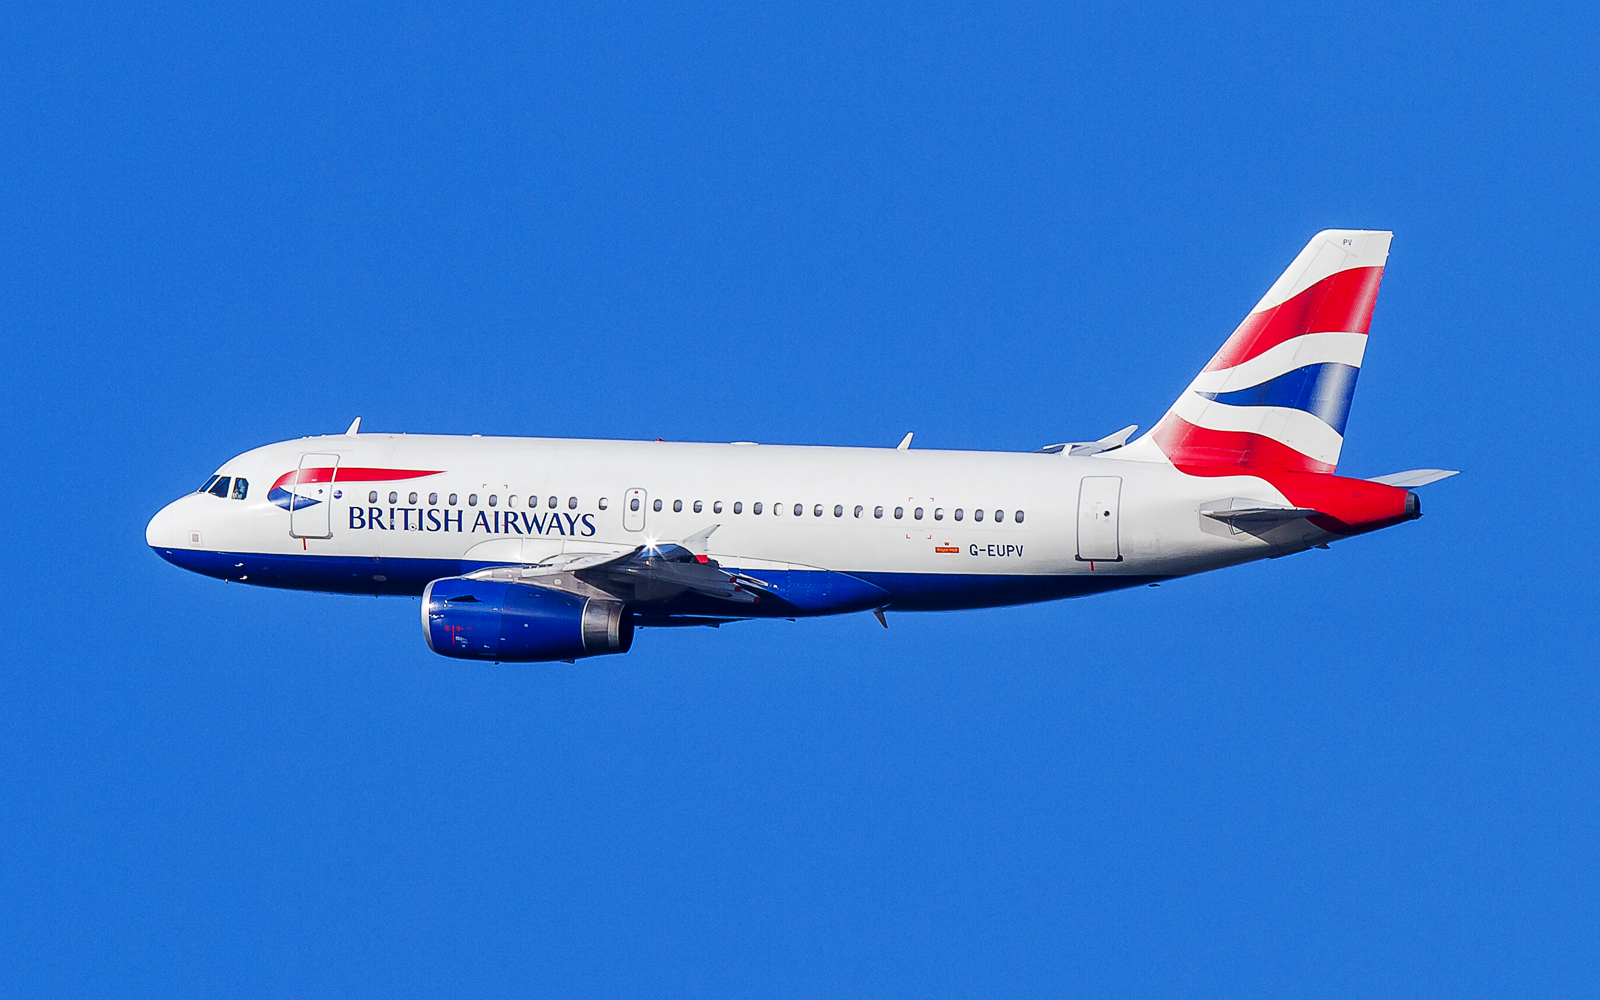 British Airways fleet departures 2013 onwards - Page 6 - Civilian Aviation